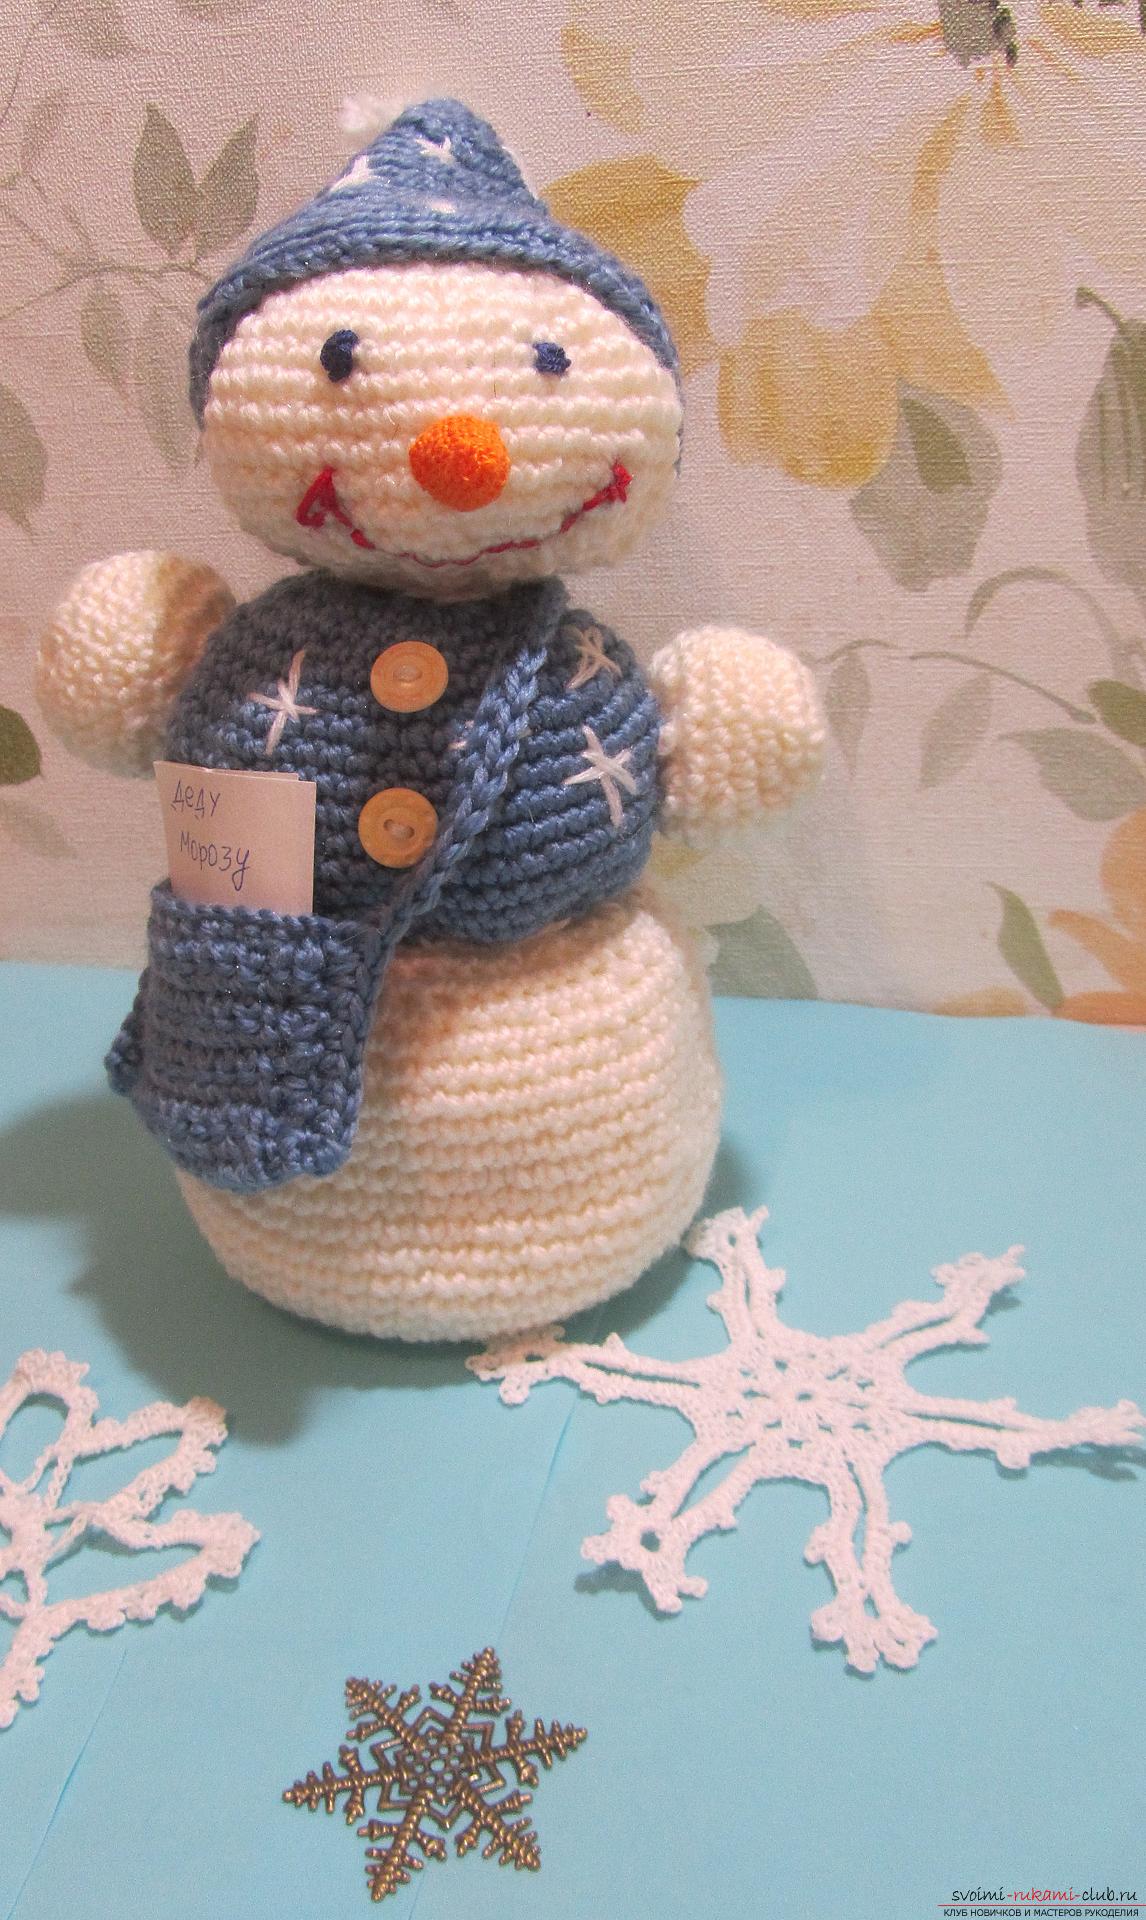 Мастер-класс расскажет как создать новогоднюю поделку - вязаного крючком снеговика Степу. Фото №1